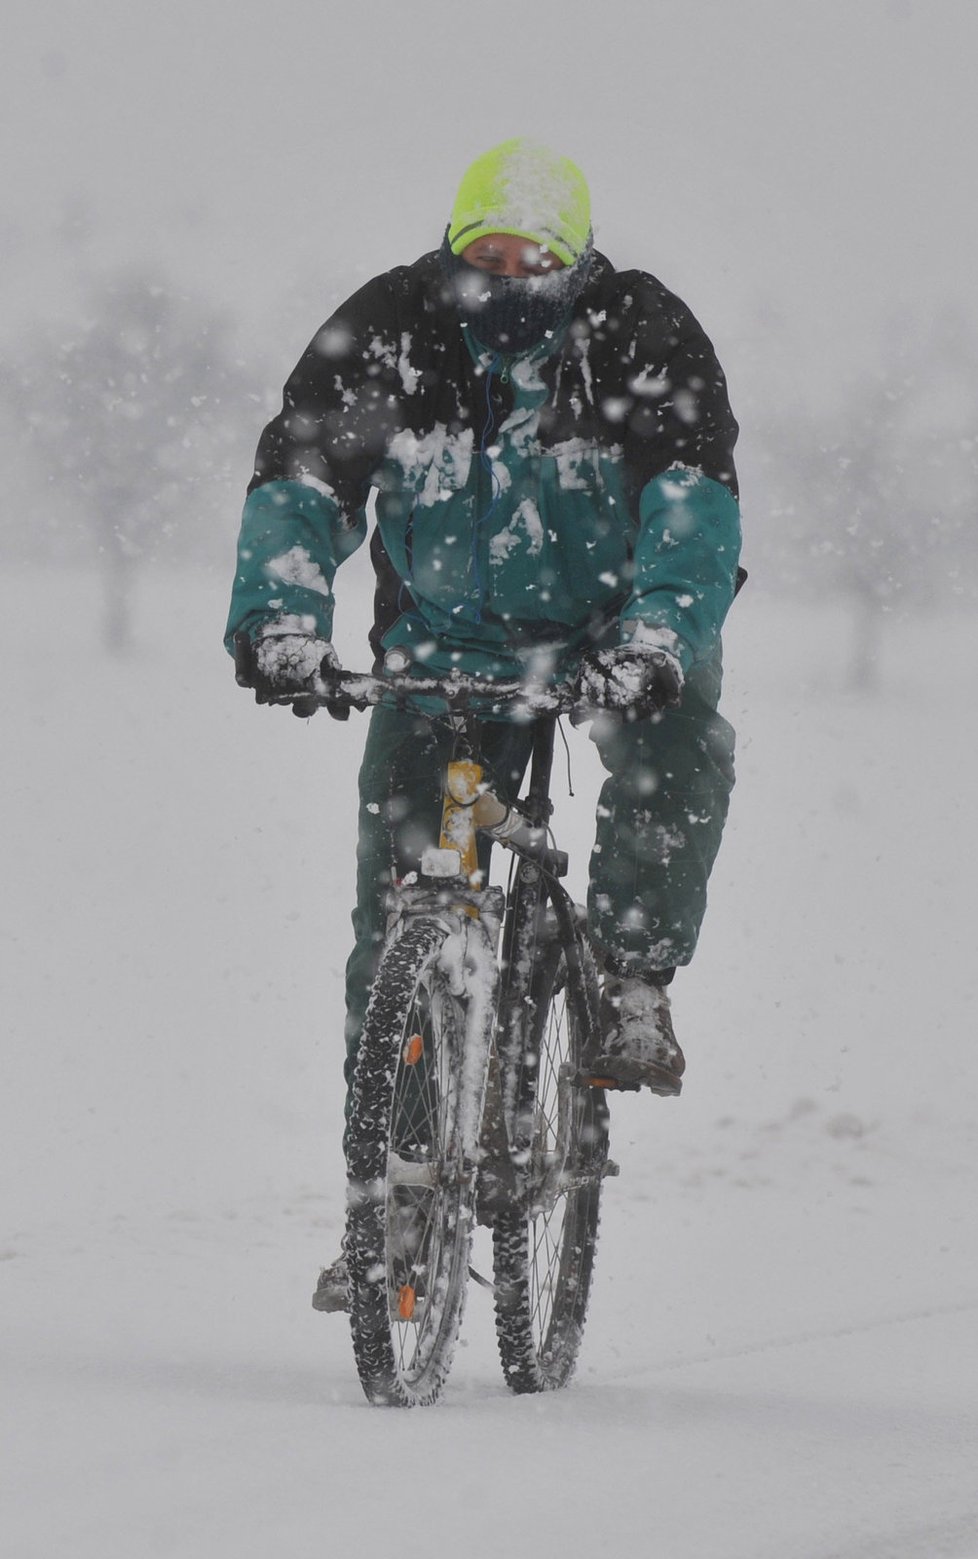 Některé ani husté sněžení neodradilo od ježdění na kole.